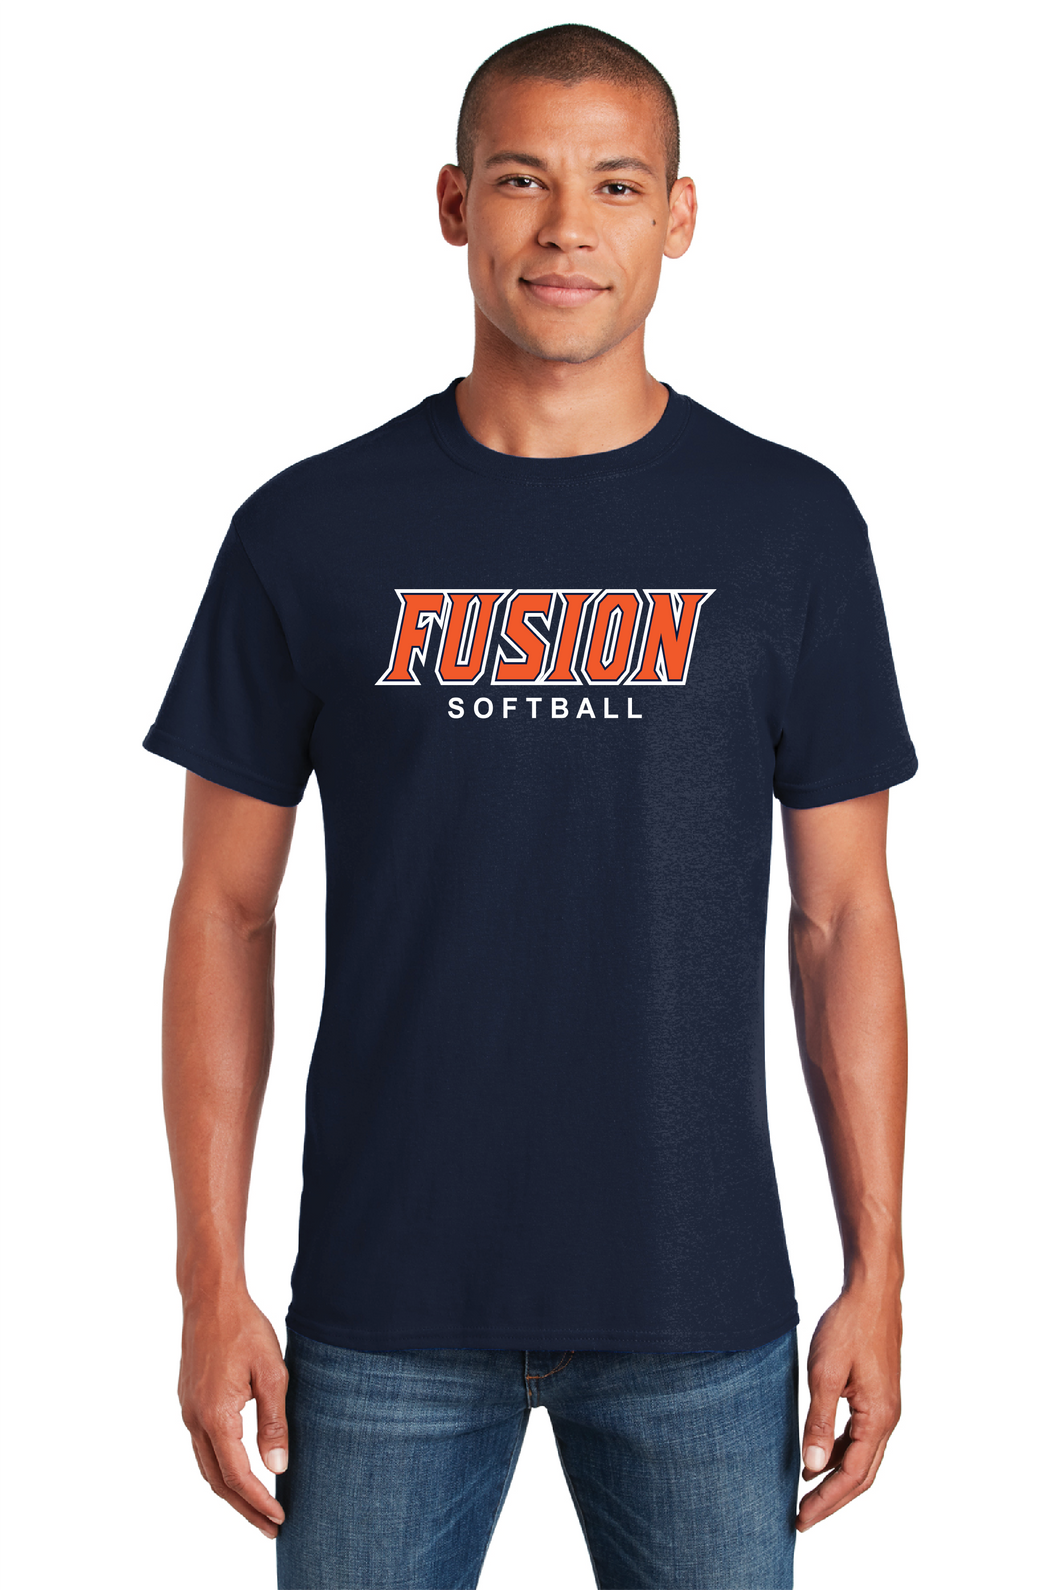 Fusion Softball Gildan Tee